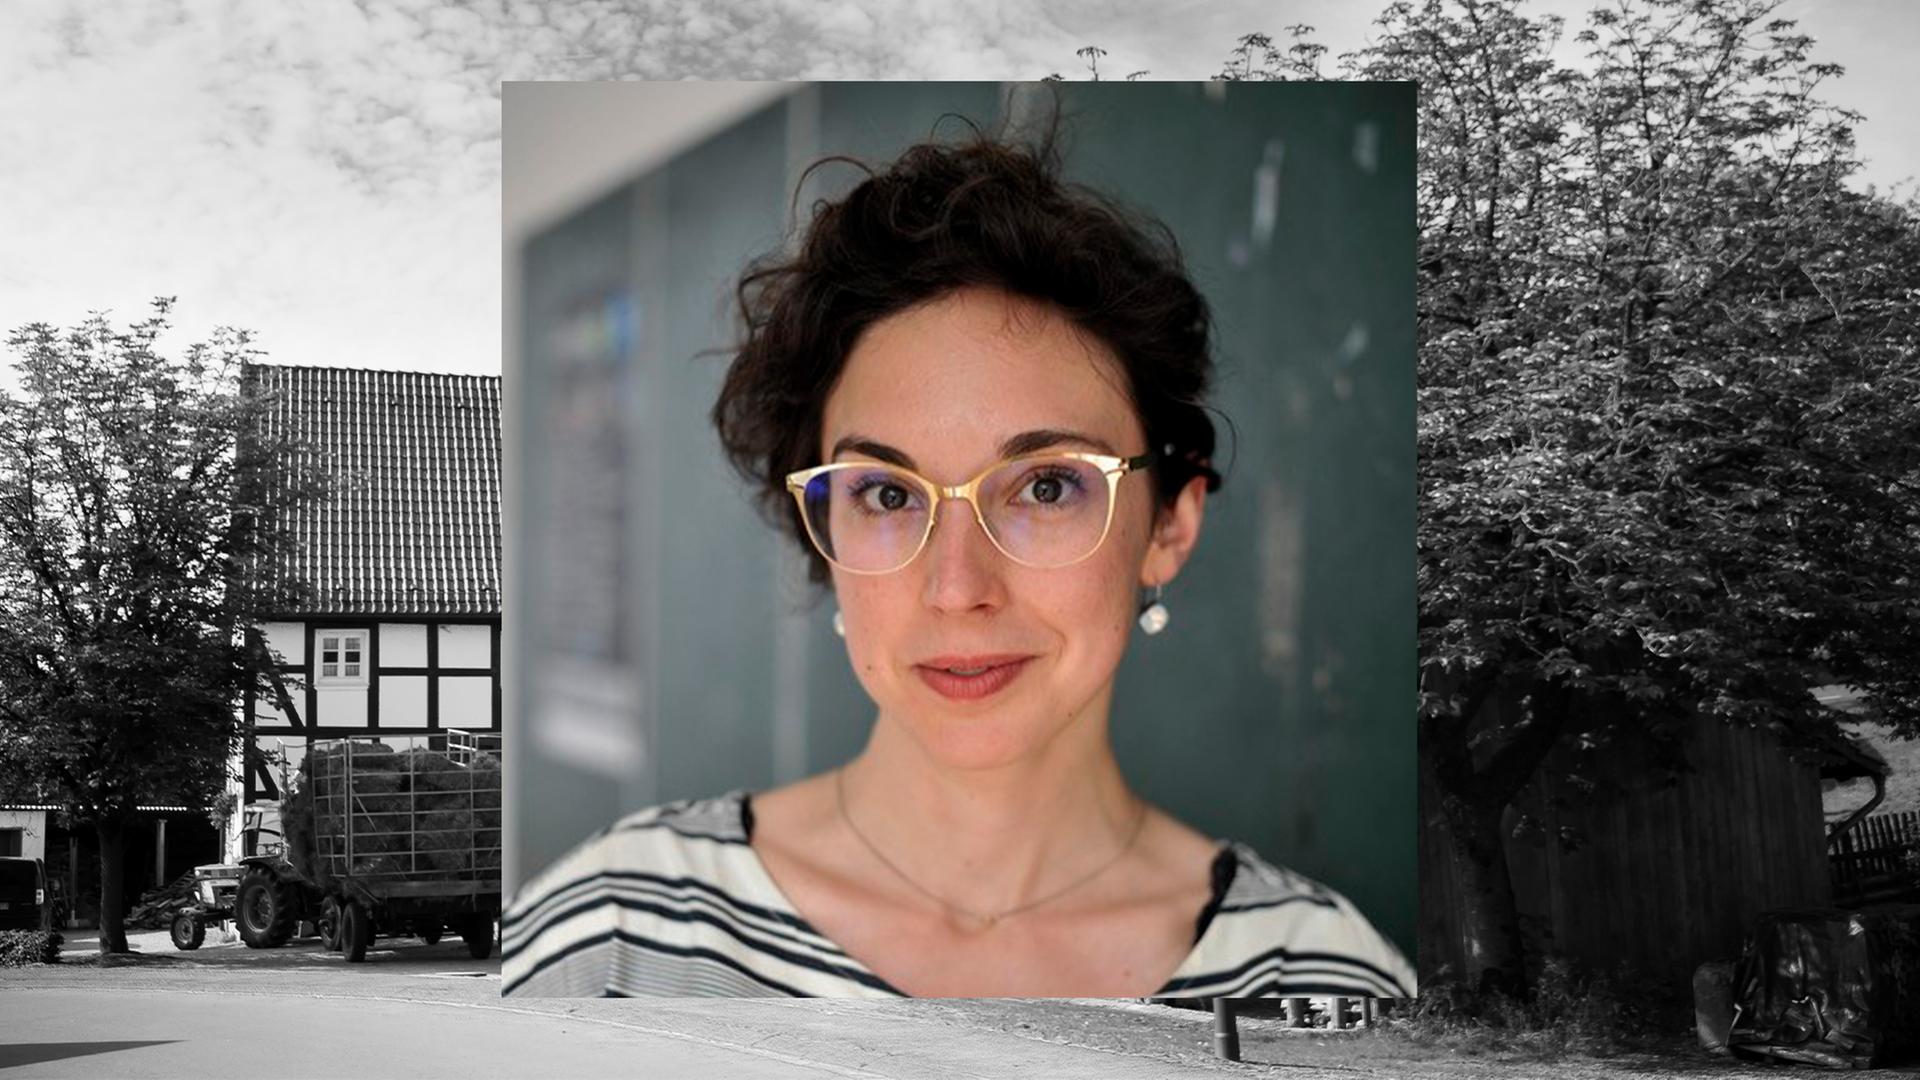 Bild in Bild: Vorn ein Porträt der Historikerin Veronika Settele. Hintergrund: Bauernhofszenerie in schwarz-weiß.